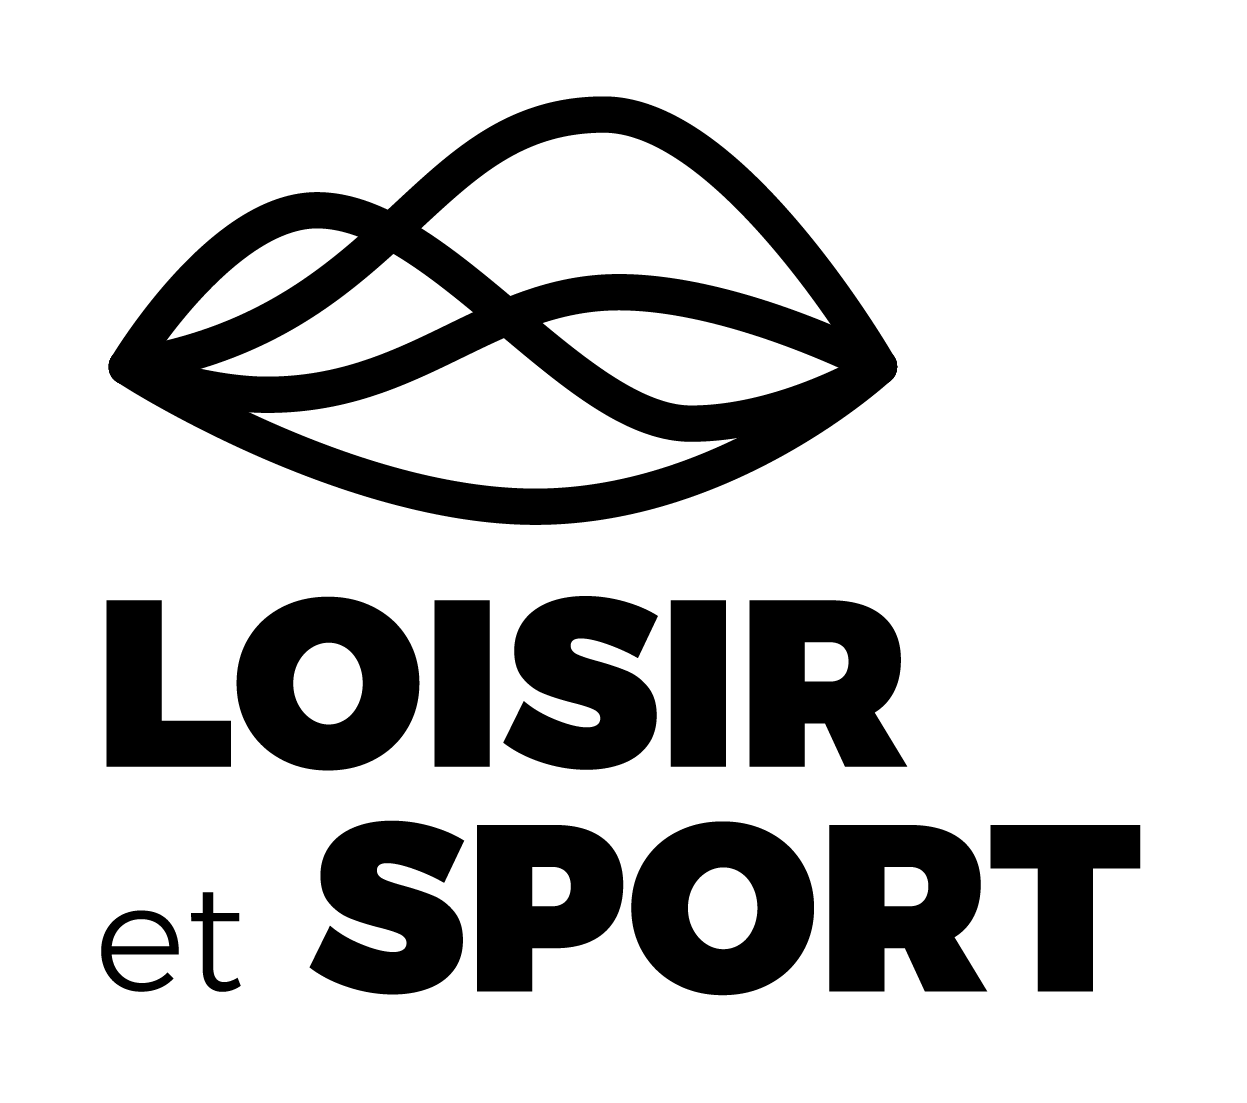 Logo de Loisir et Sport Bas-Saint-Laurent en noir